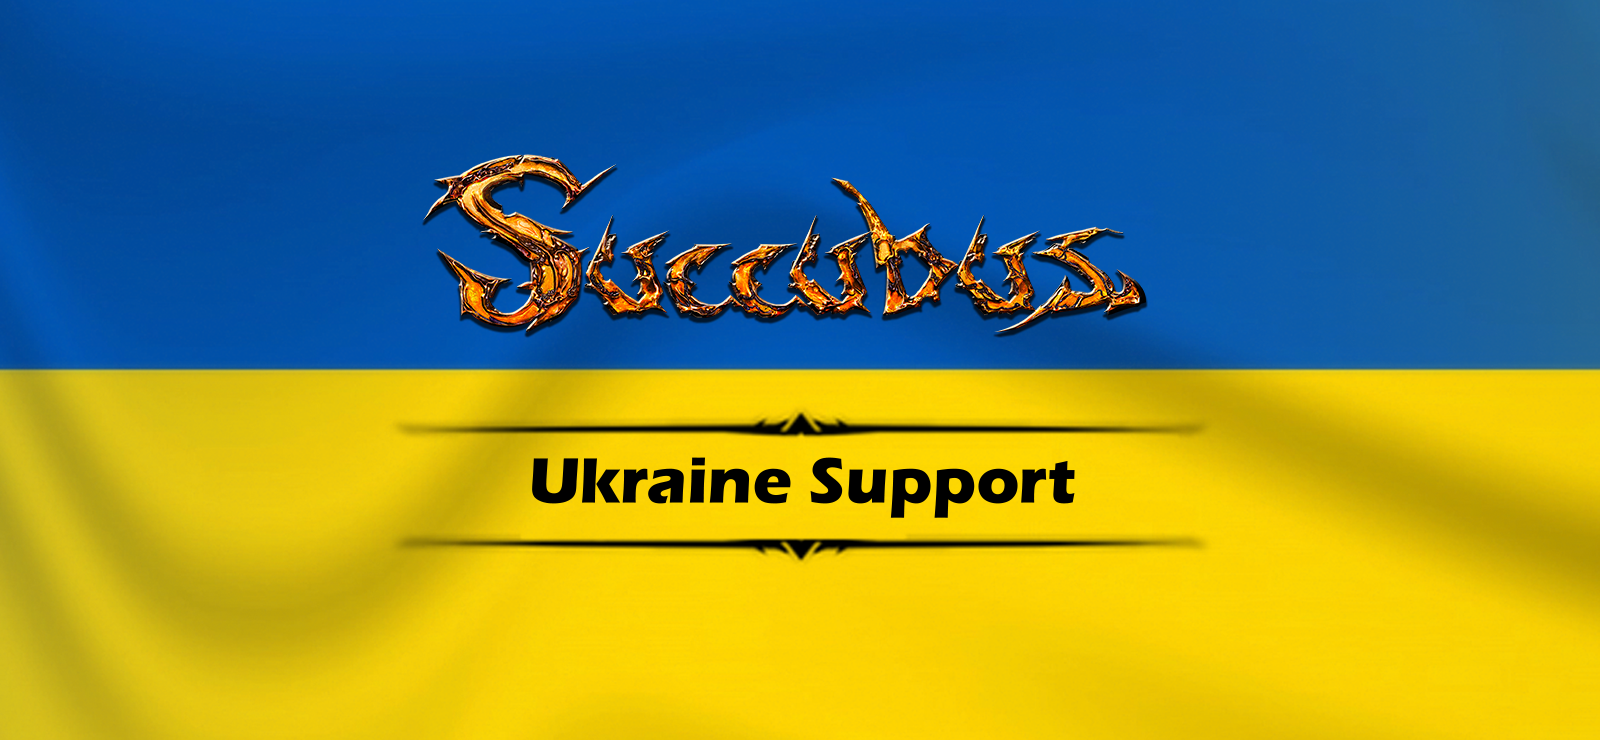 Succubus - Ukraine Support